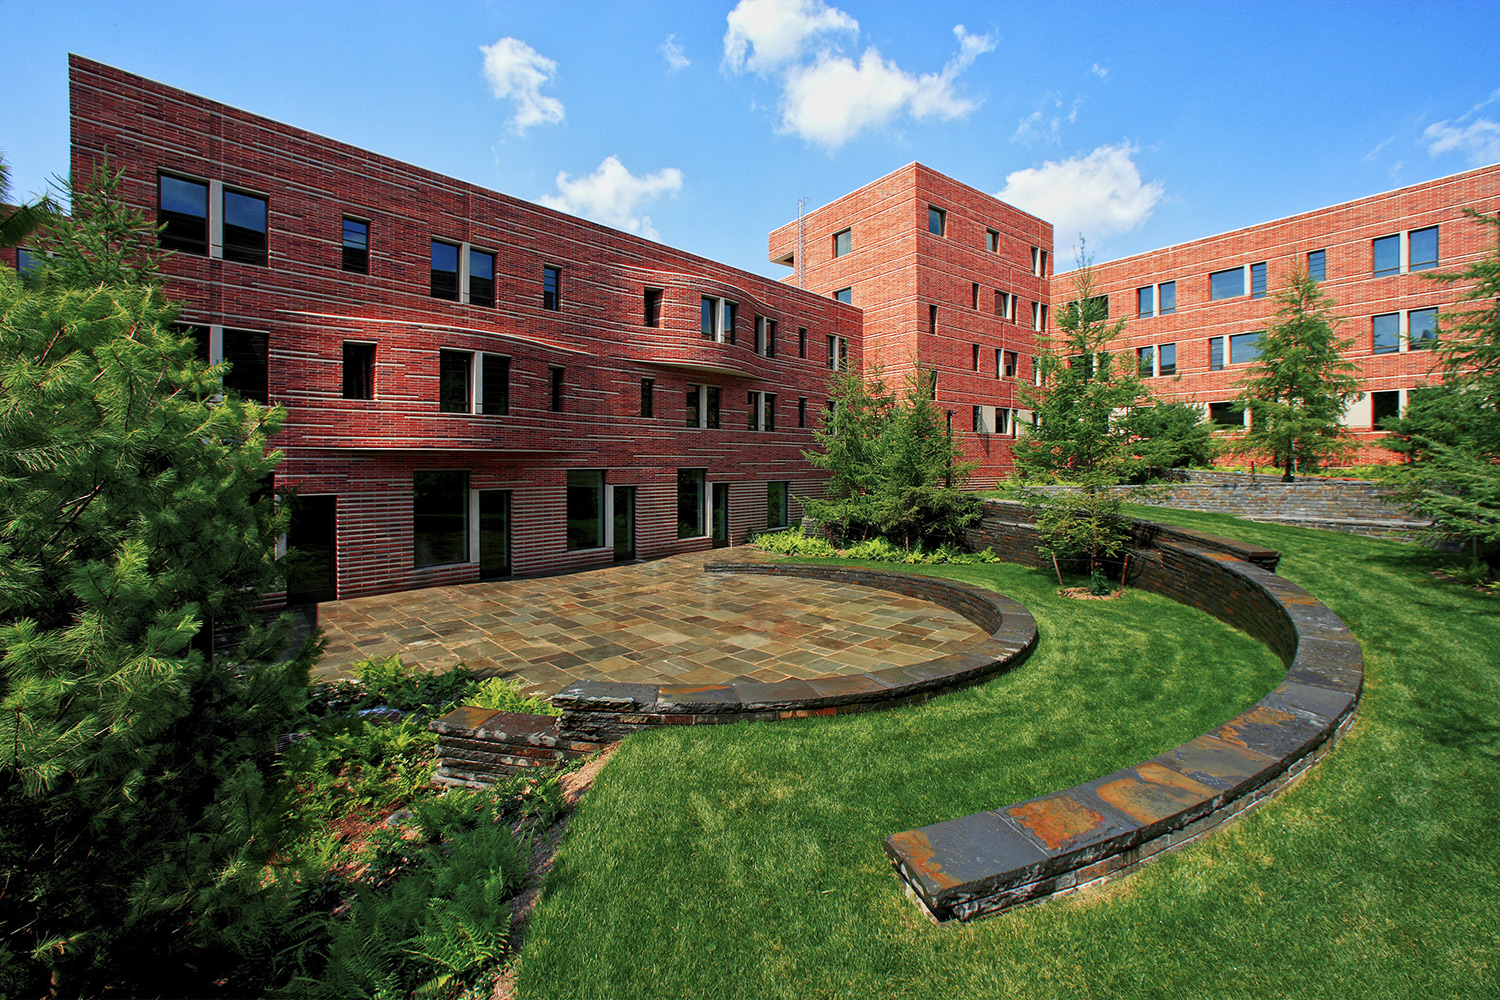 Princeton University Butler Dorms for Turner Construction